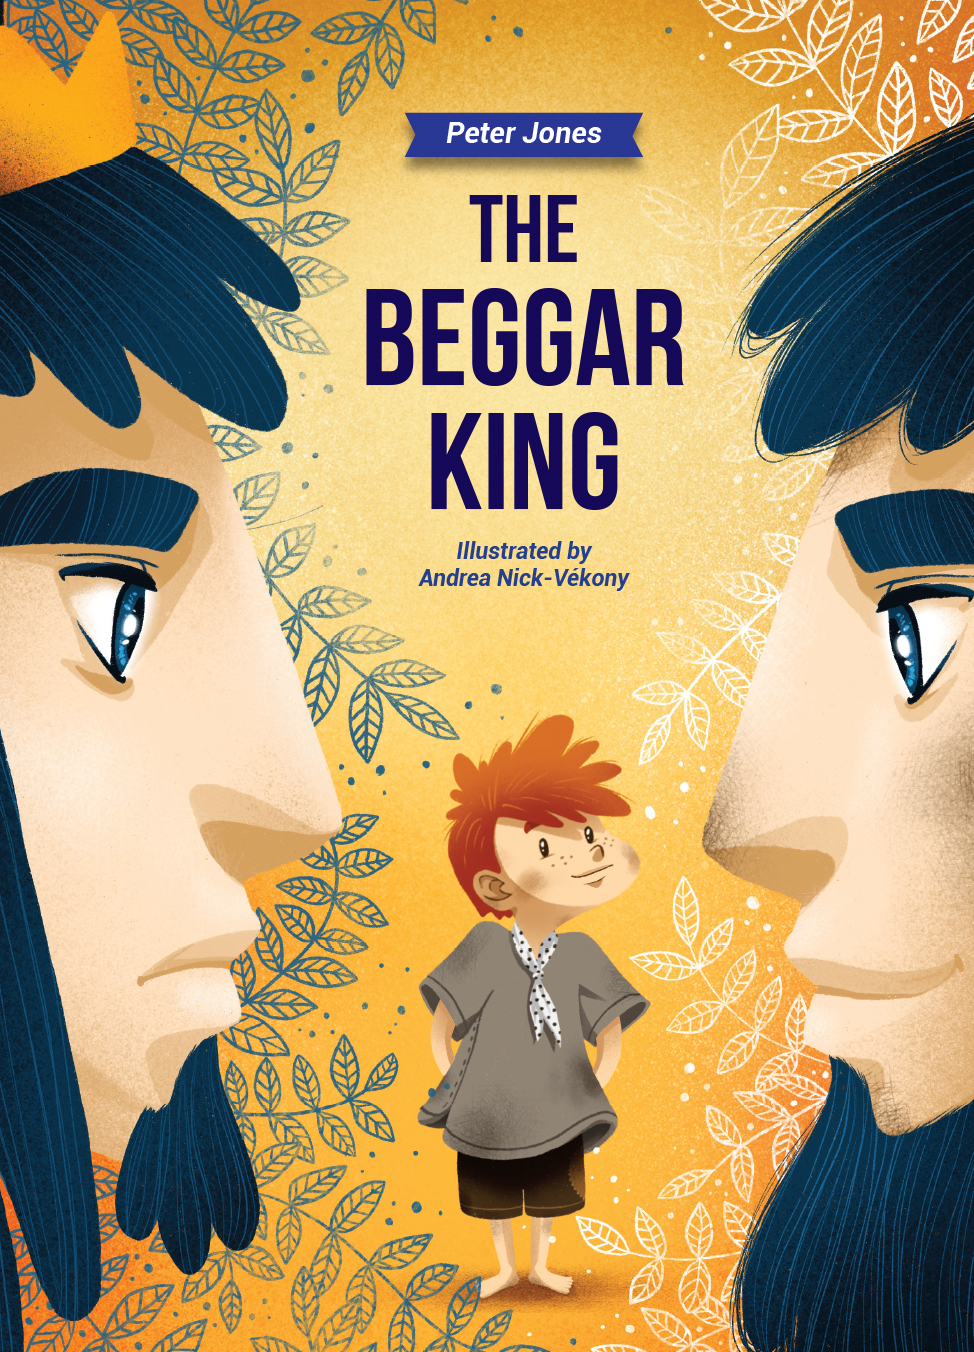 The beggar king